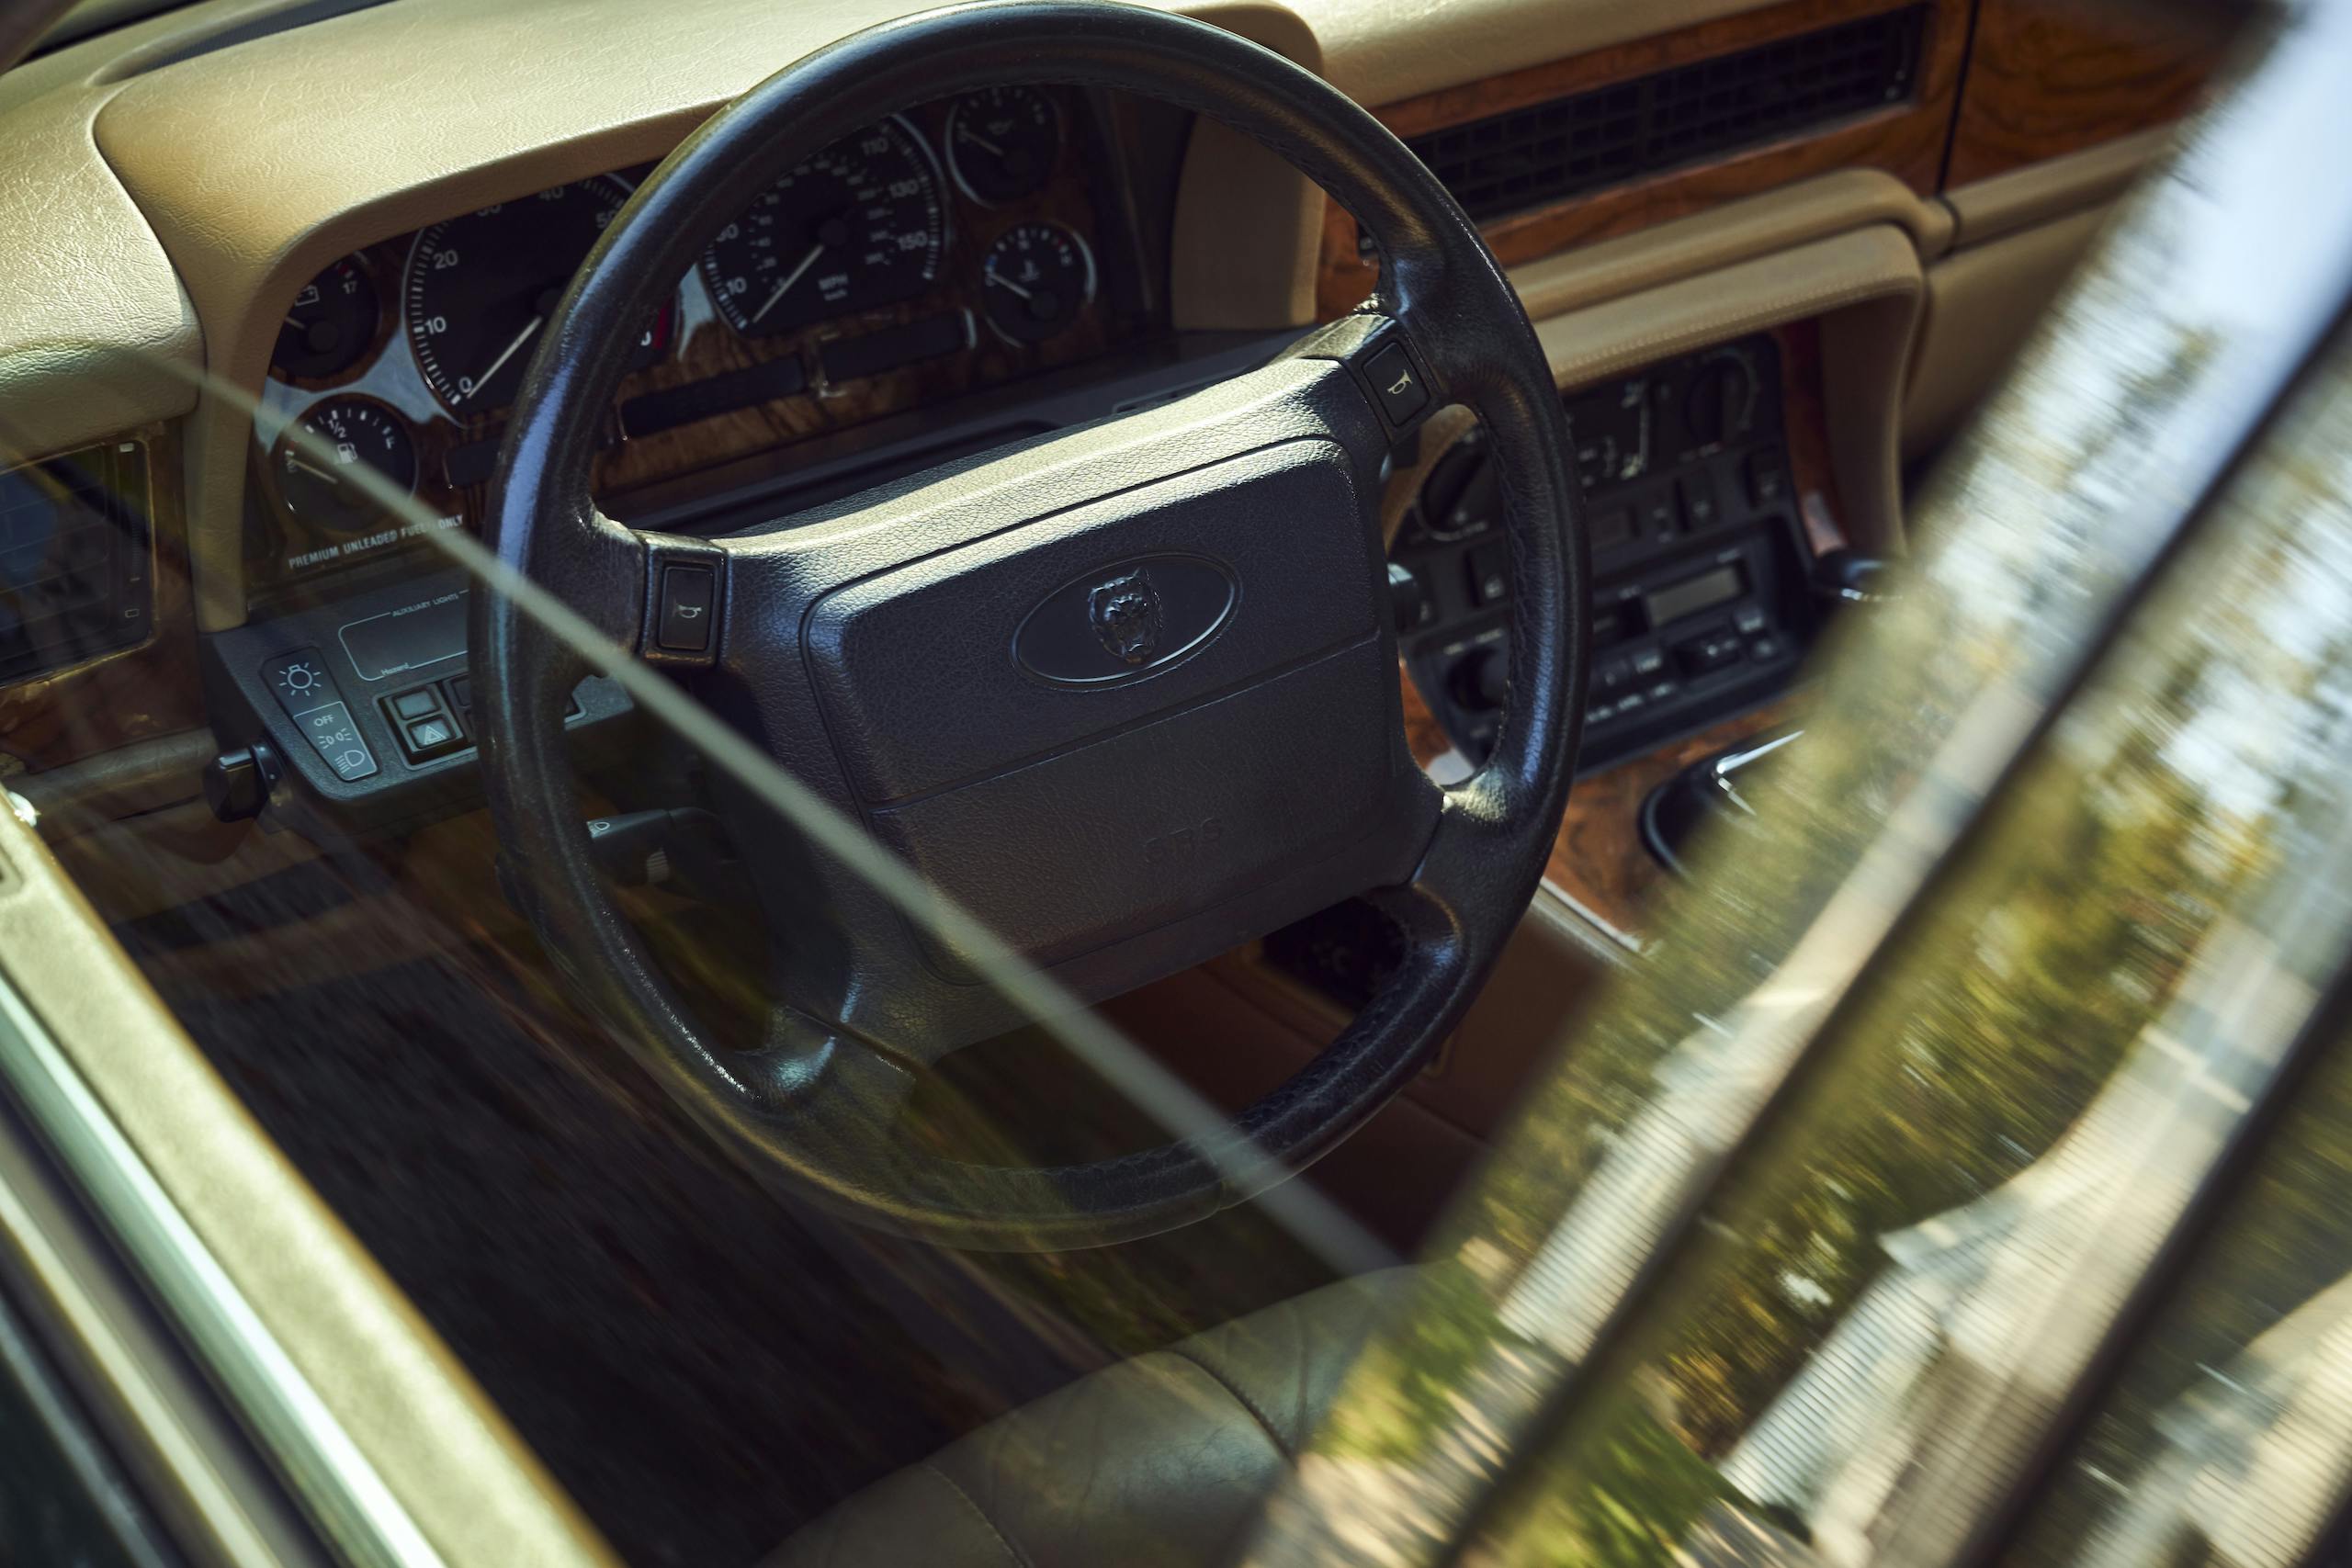 Jaguar XJ6 steering wheel through lowered window